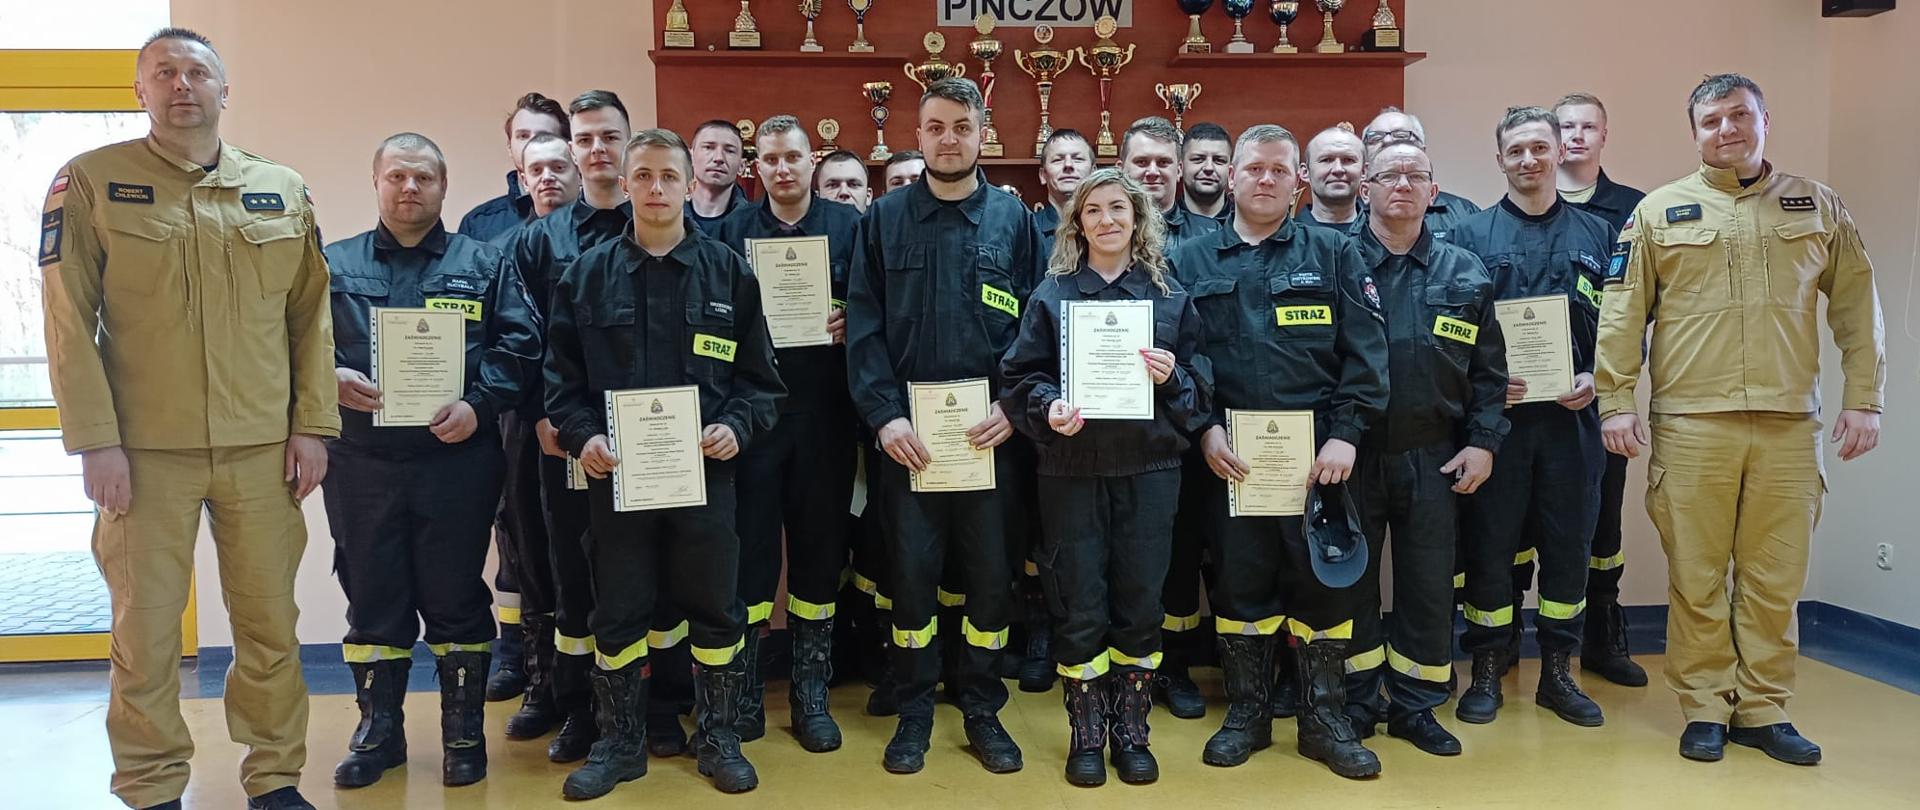 Strażacy - ratownicy Ochotniczych Straży Pożarnych z komisją egzaminacyjną na tle gabloty z pucharami KP PSP w Pińczowie.